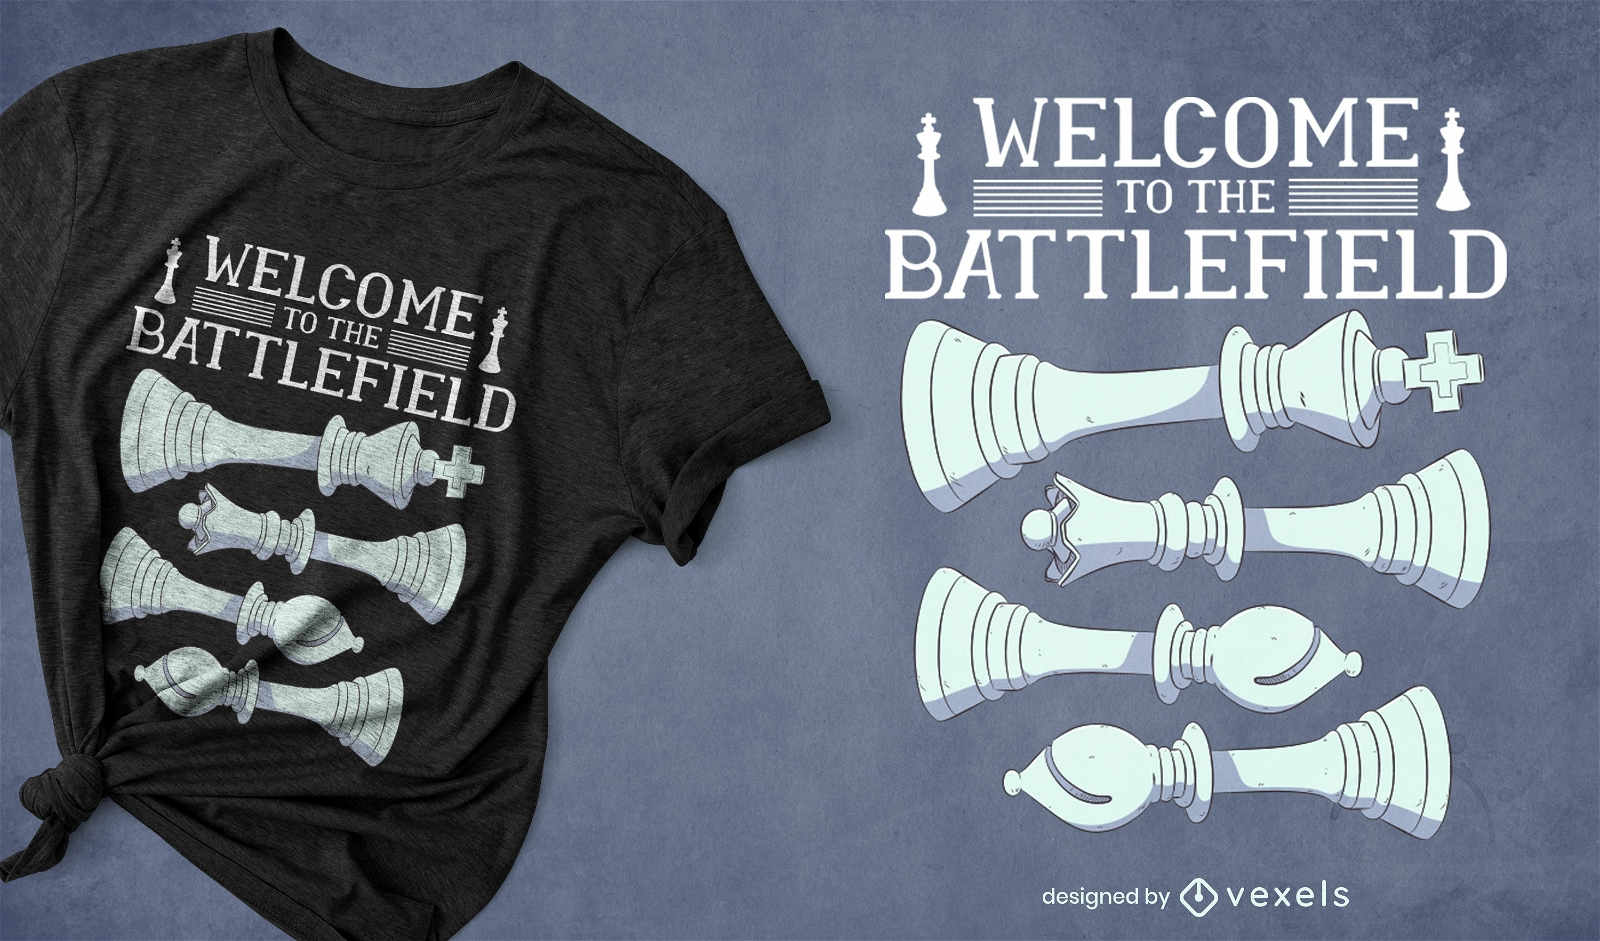 Battlefield-Schach-T-Shirt-Design